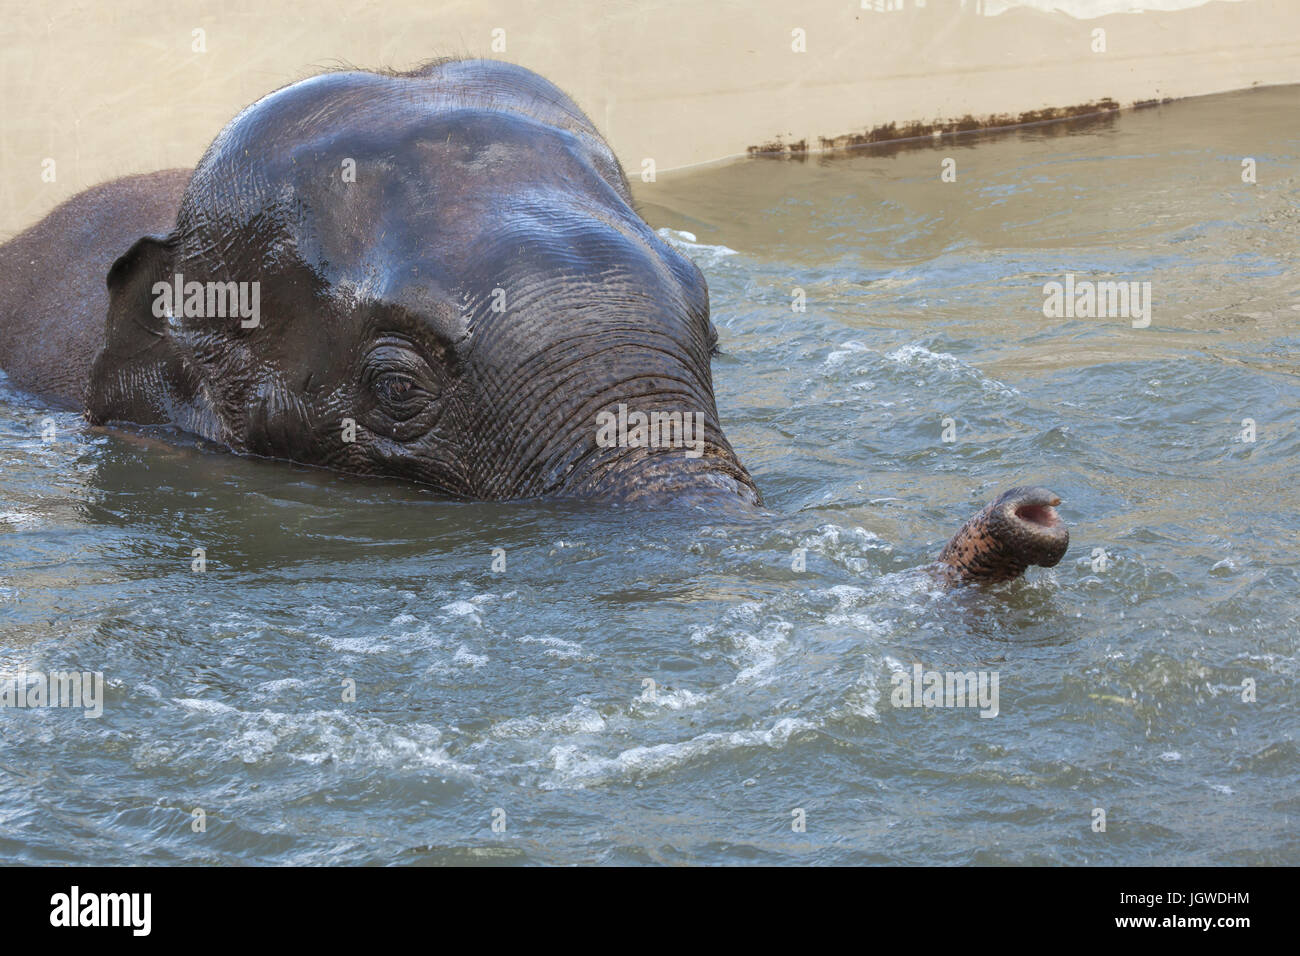 Asian elephant (Elephas maximus) bathing. Stock Photo